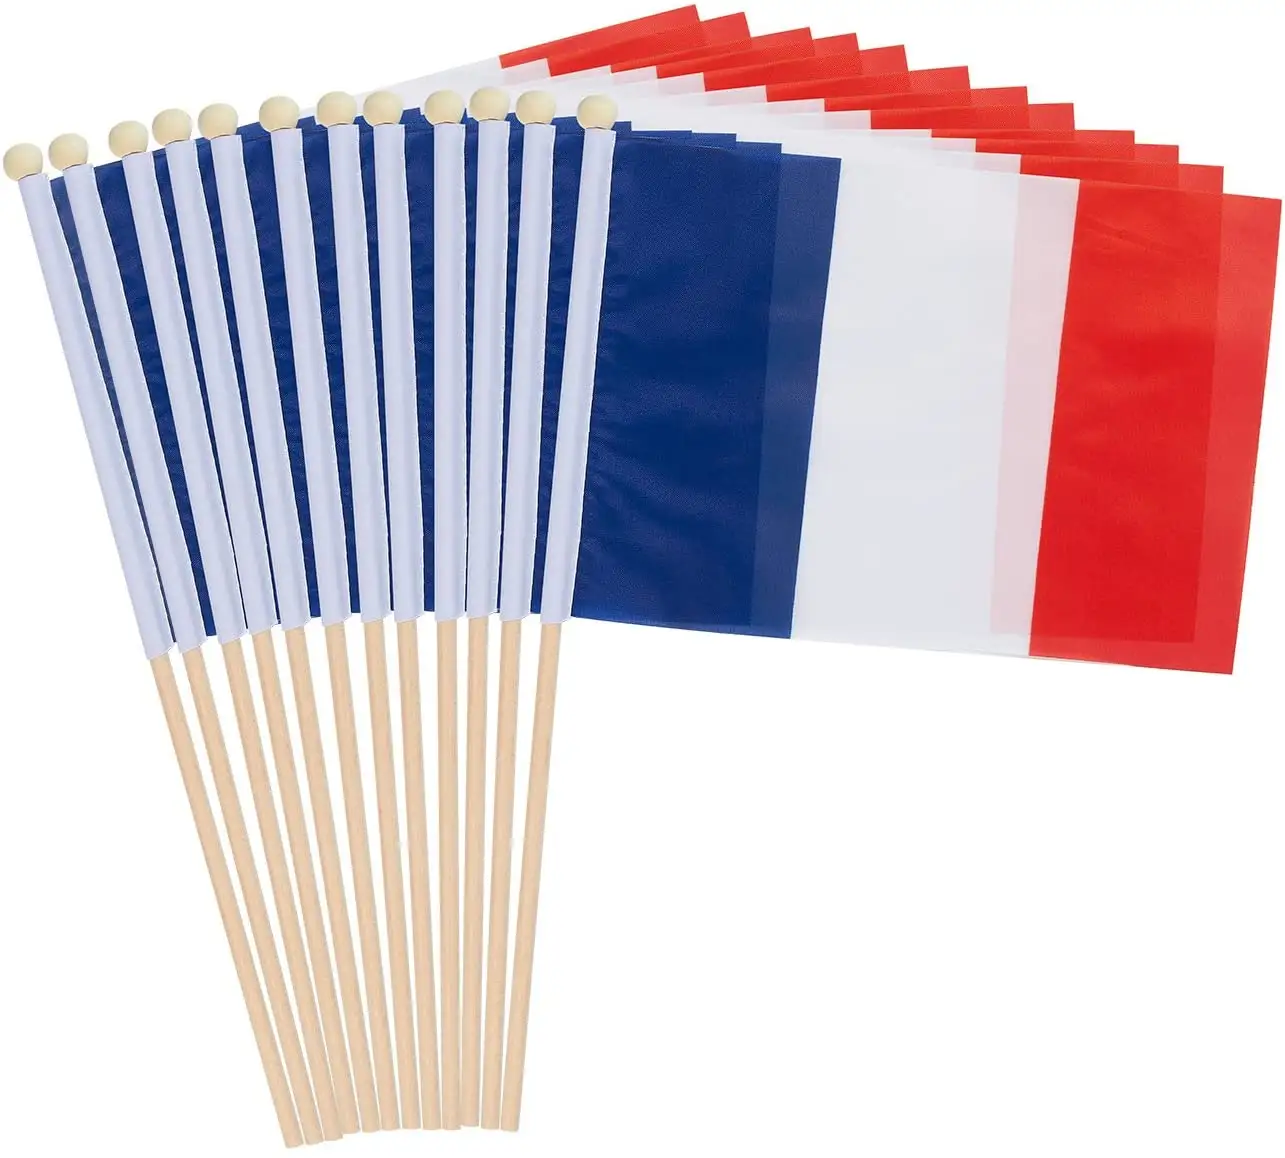 Bandeira de ondulação de poliéster, alta qualidade, 100% poliéster, design personalizado, 30*45cm, durável, material frança, bandeira de madeira, venda imperdível